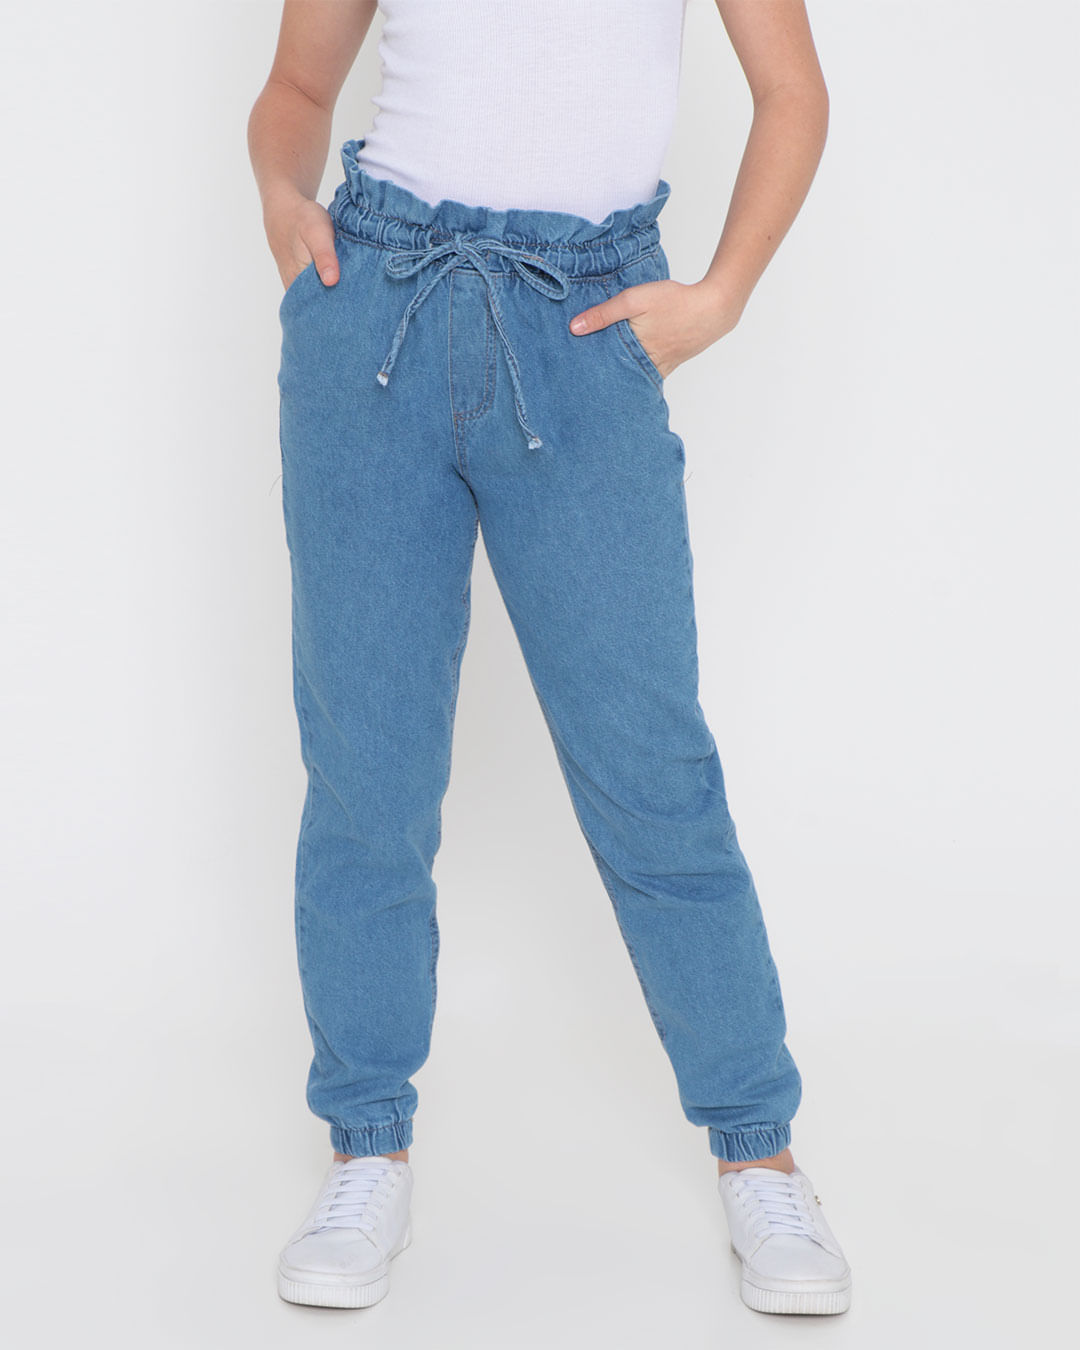 Calca-Jeans-Juvenil-Jogger-Azul-Claro